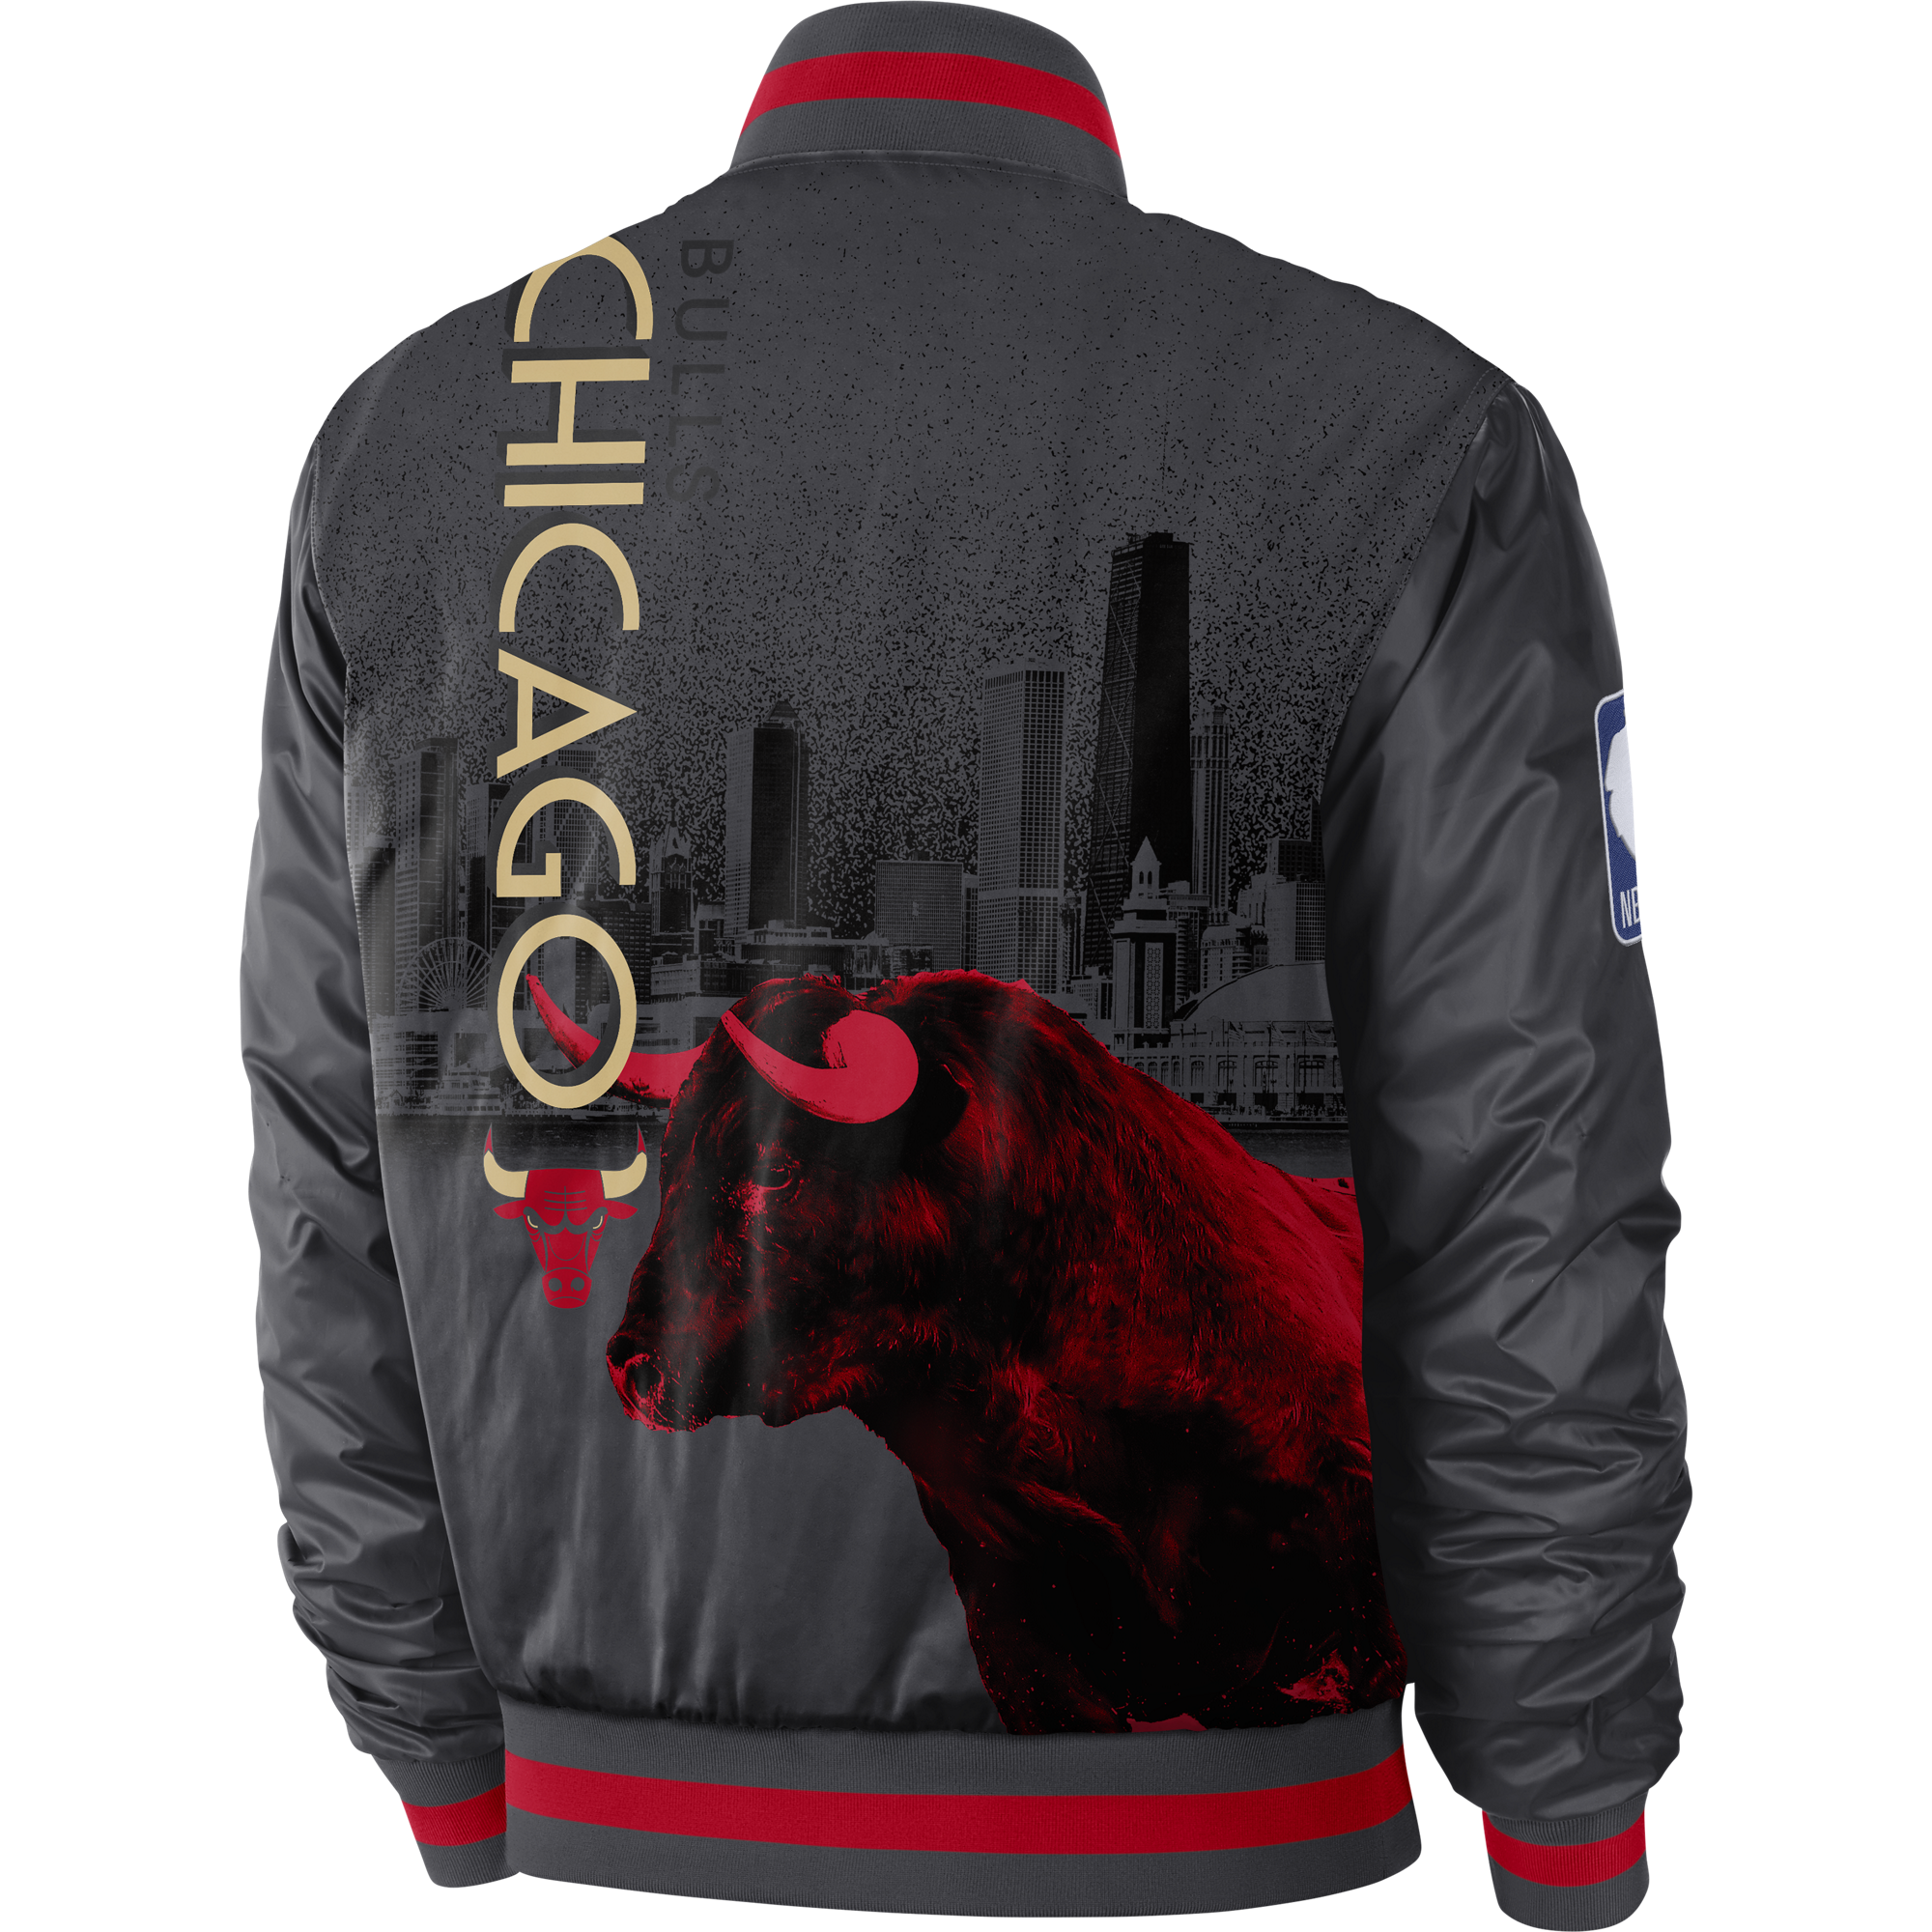 chicago bulls courtside jacket